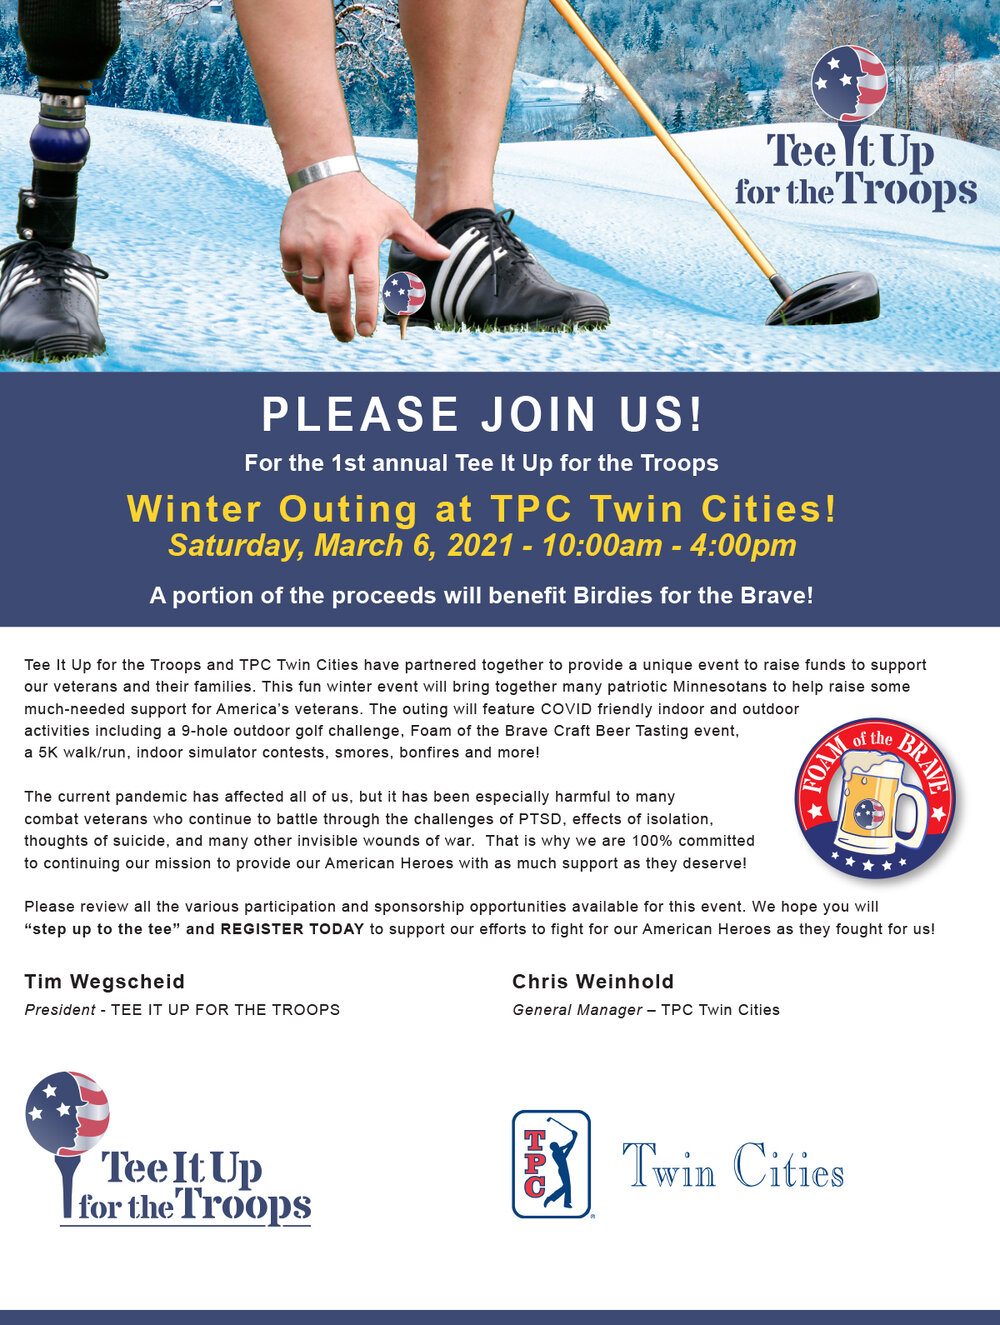 Lakukan Tee It Up untuk Troops Winter Outing di TPC Twin Cities pada 6 Maret 2021